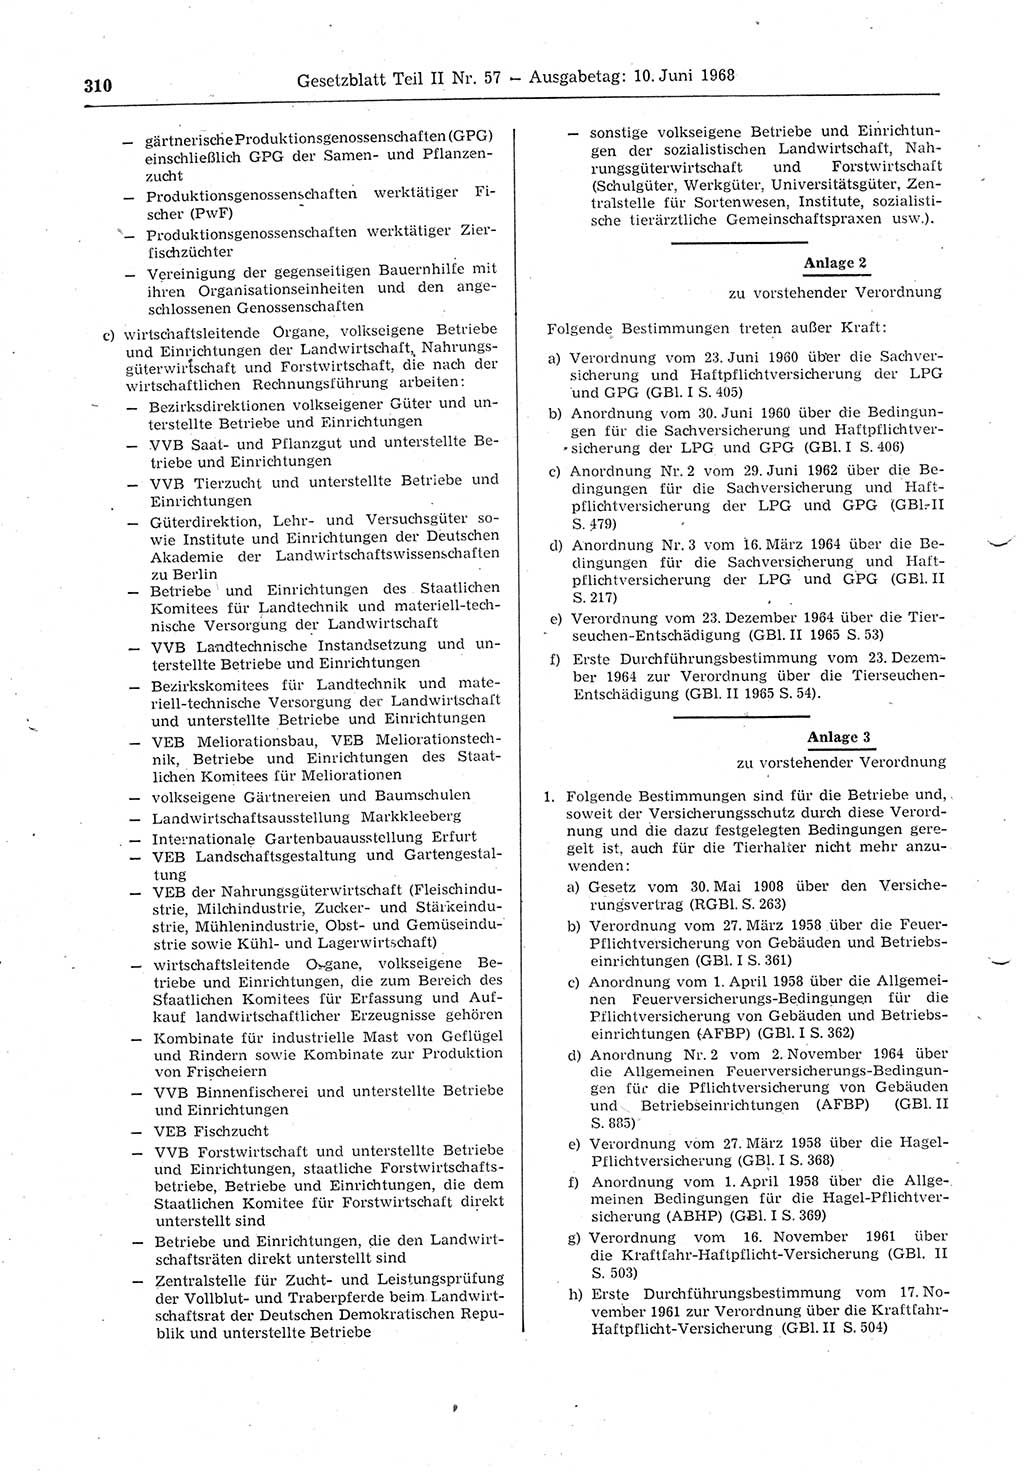 Gesetzblatt (GBl.) der Deutschen Demokratischen Republik (DDR) Teil ⅠⅠ 1968, Seite 310 (GBl. DDR ⅠⅠ 1968, S. 310)